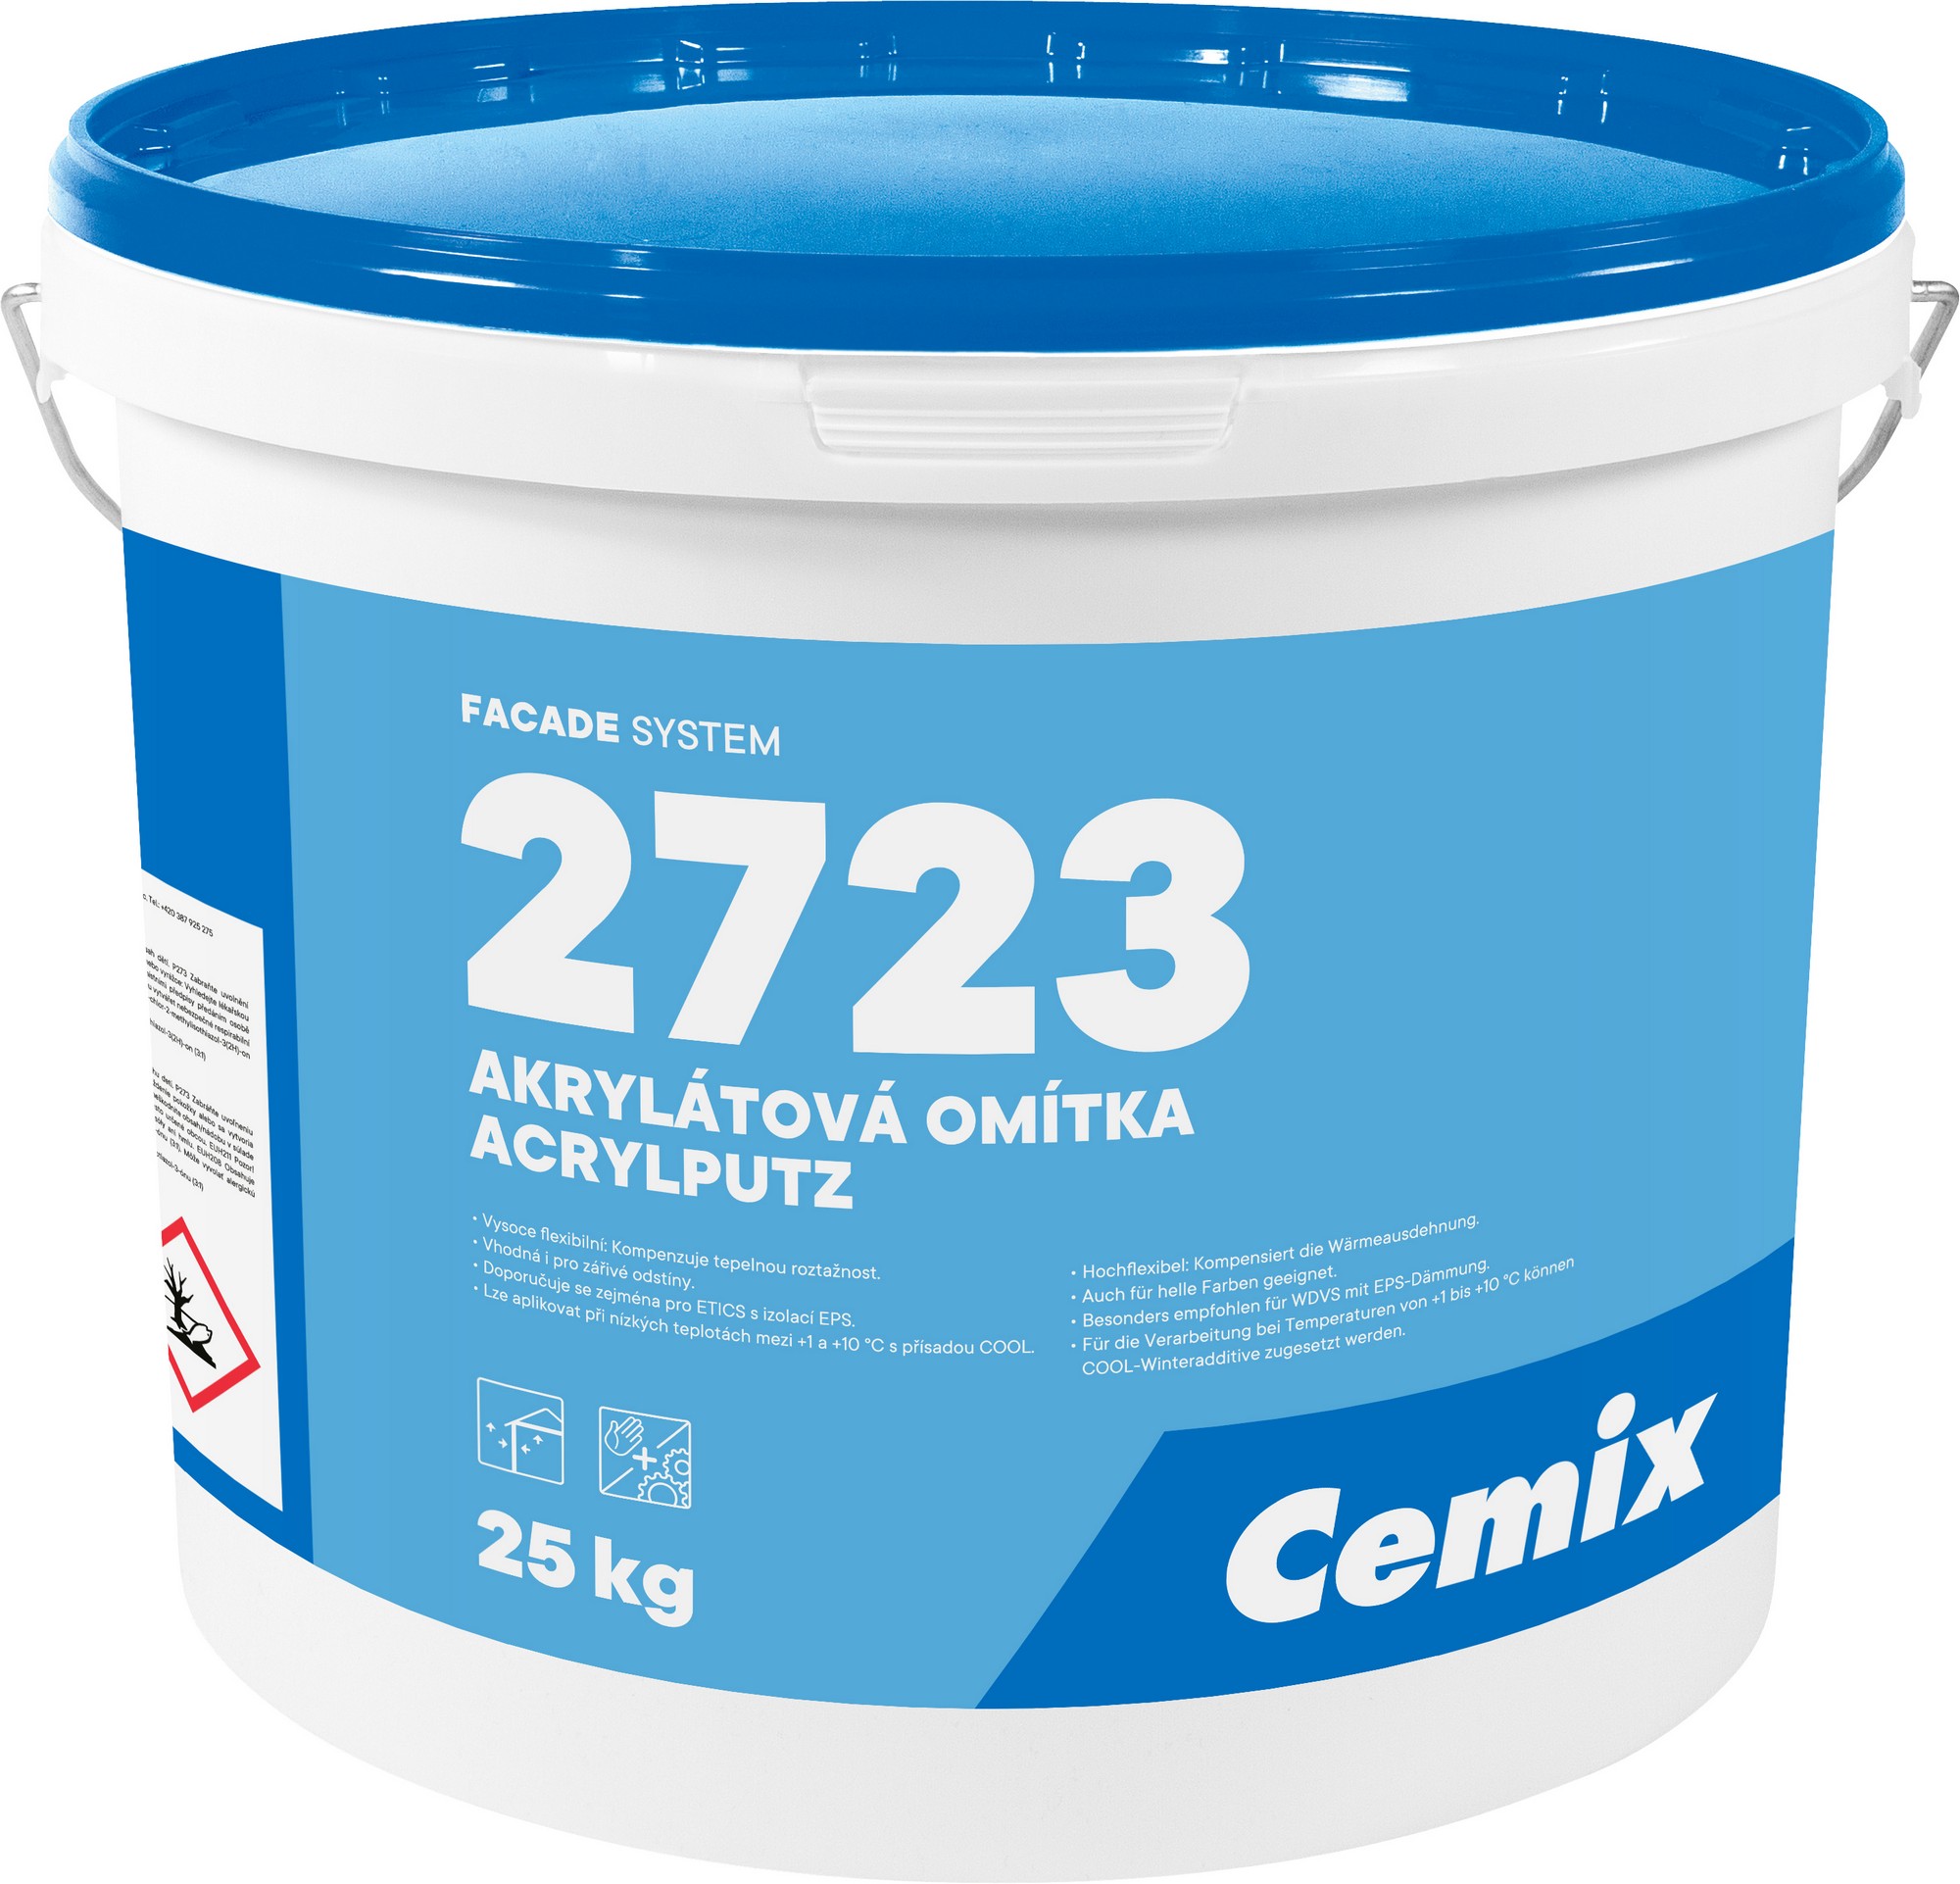 Nátěr fasádní akrylátový Cemix 2723 bezpř.